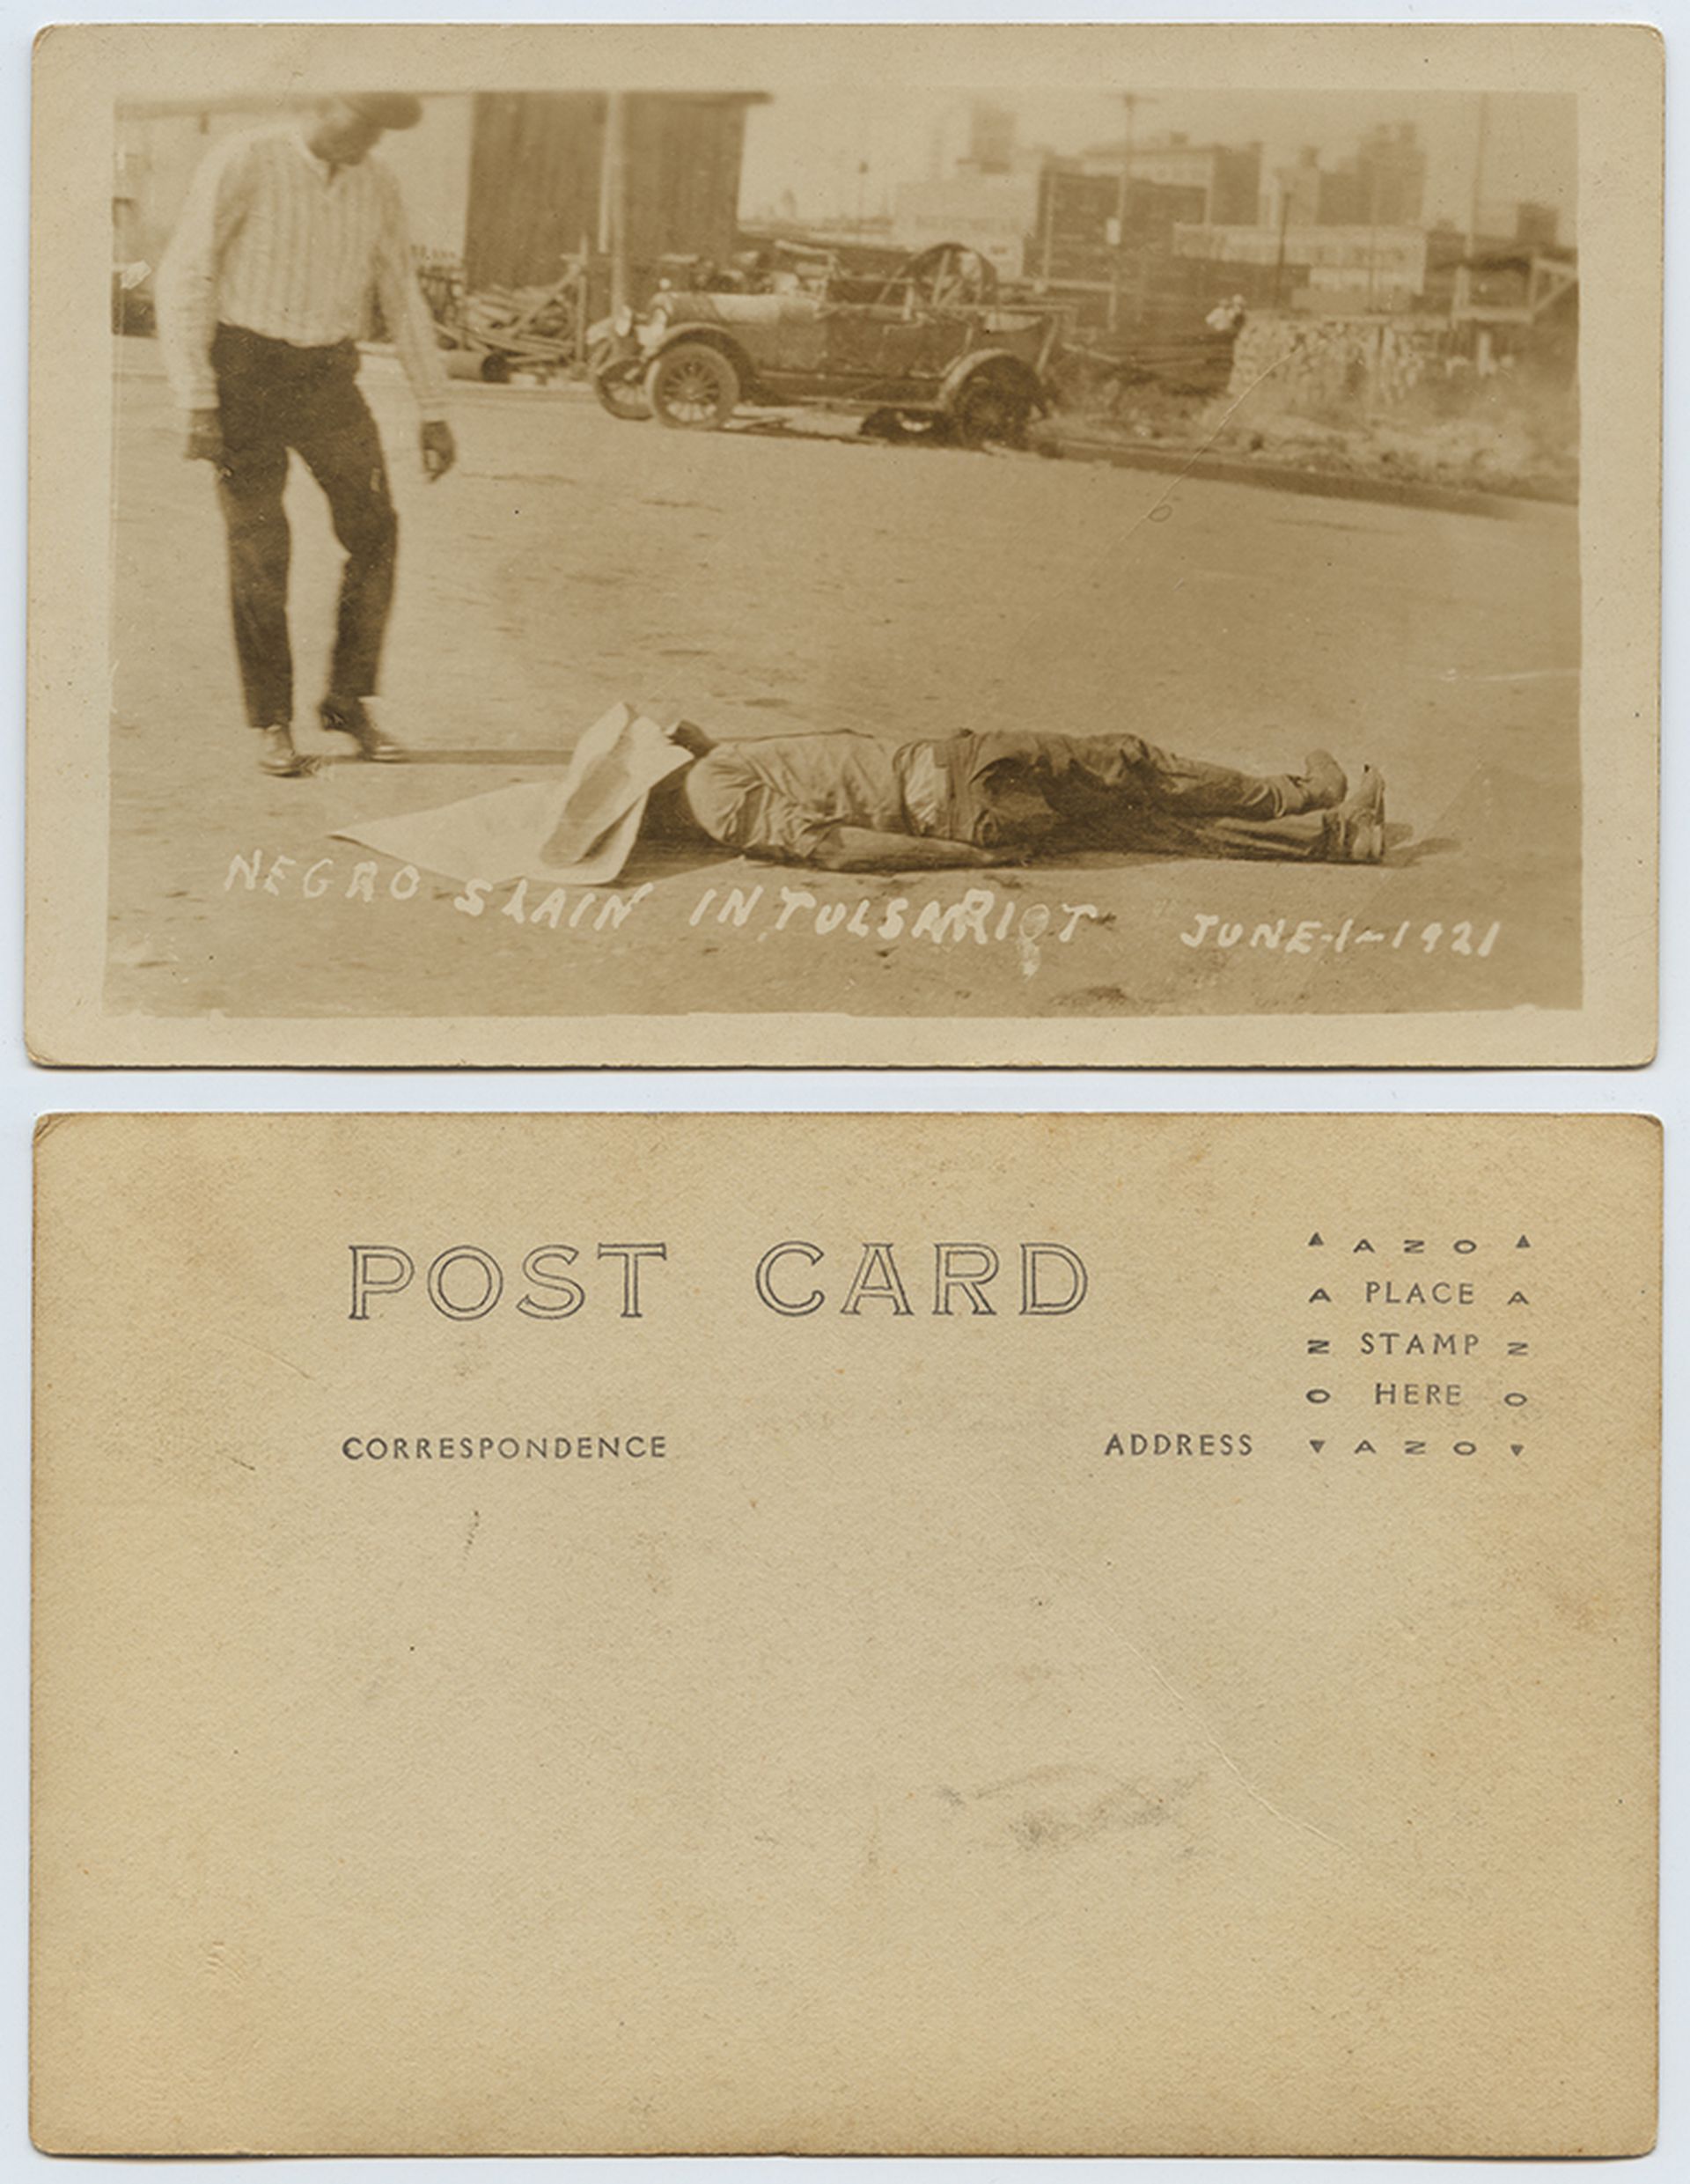 有人将当时屠杀相片制作成明信片。图中文字指“黑人在塔尔萨暴动被杀”。（DeGolyer Library, Southern Methodist University）